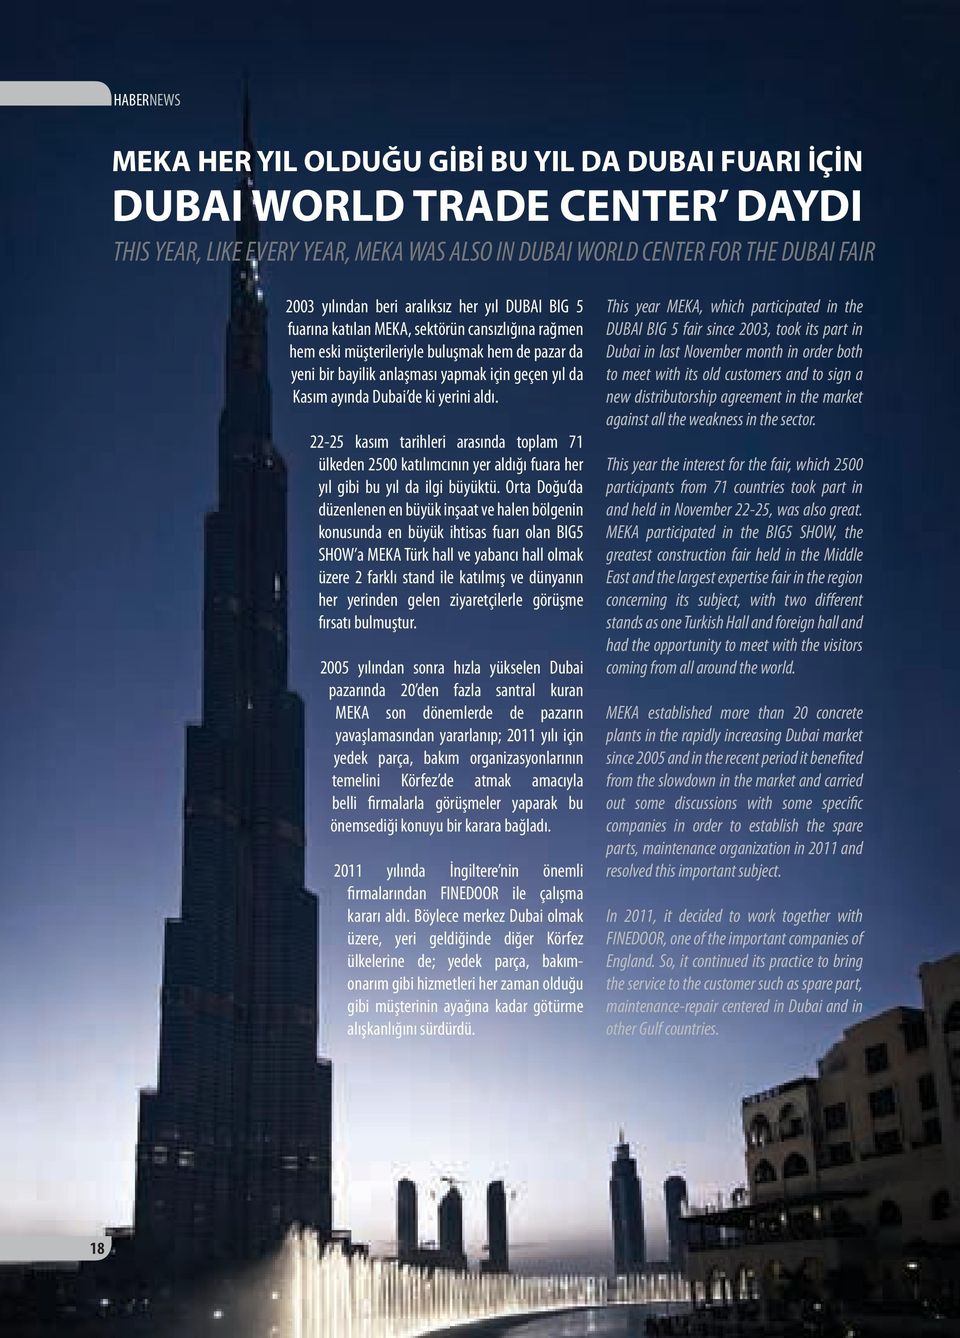 Dubai de ki yerini aldı. 22-25 kasım tarihleri arasında toplam 71 ülkeden 2500 katılımcının yer aldığı fuara her yıl gibi bu yıl da ilgi büyüktü.